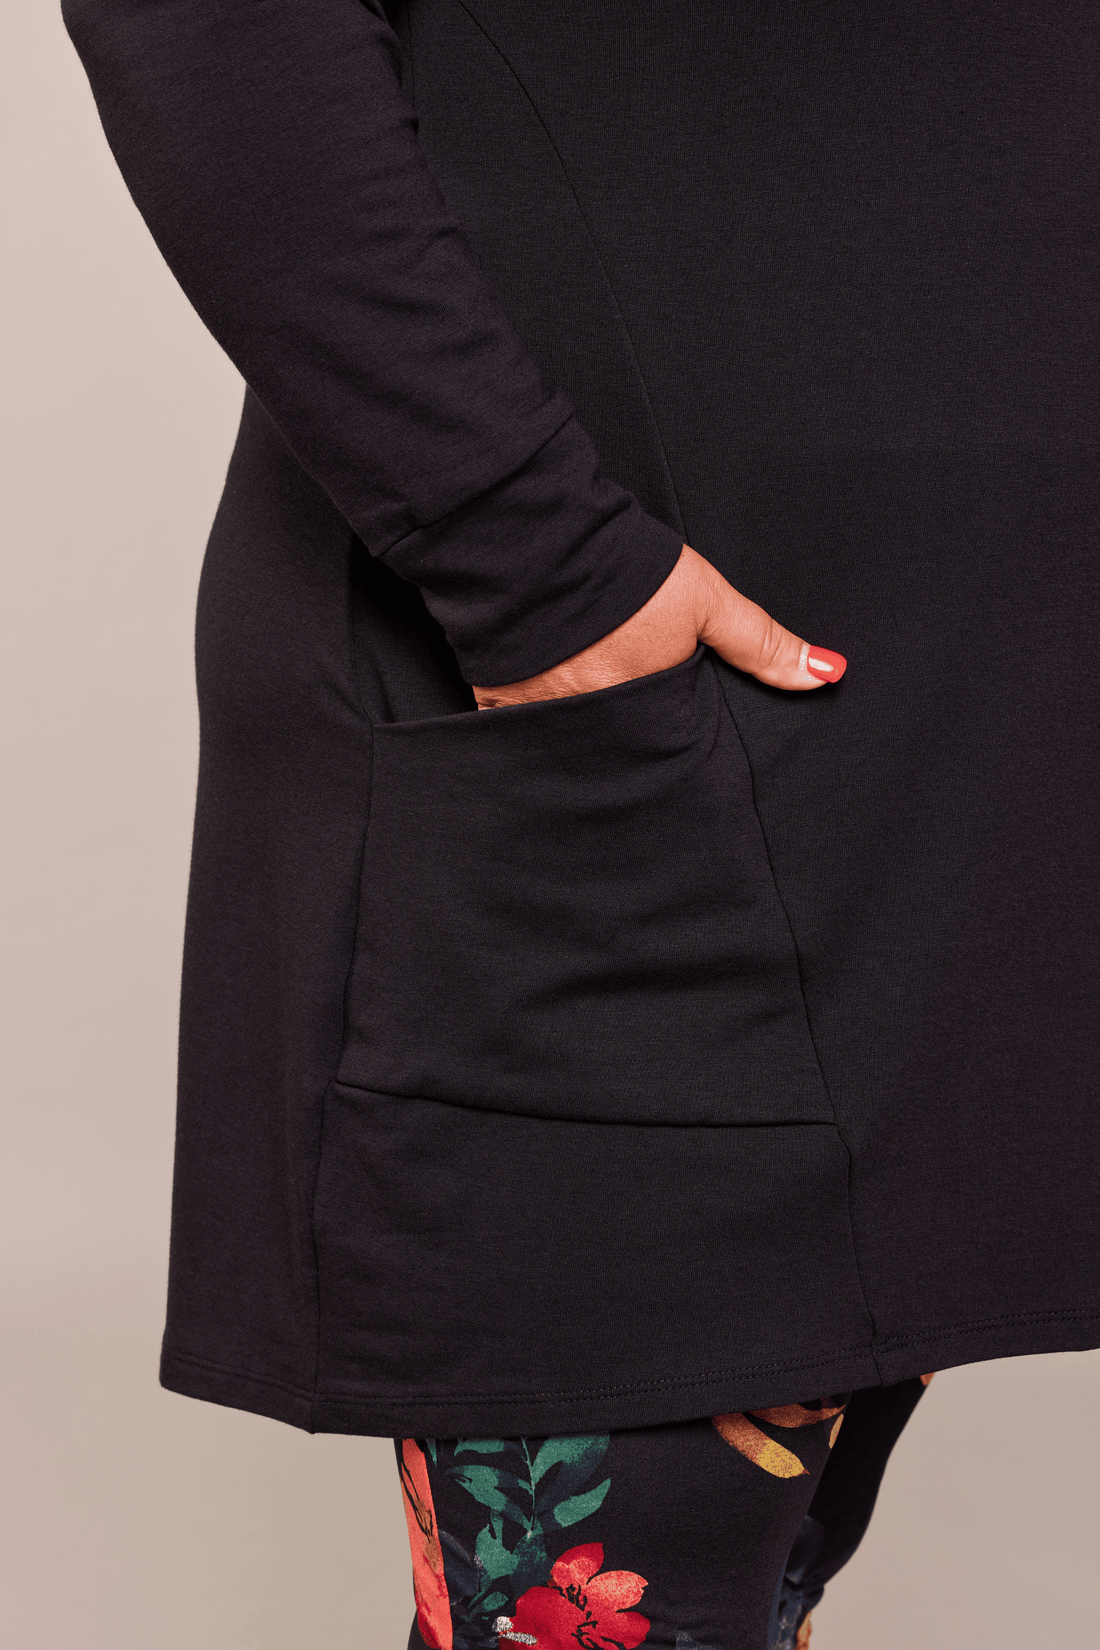 Tunique noire pour femme à manches longues et col haut, avec poches, faite au Québec.